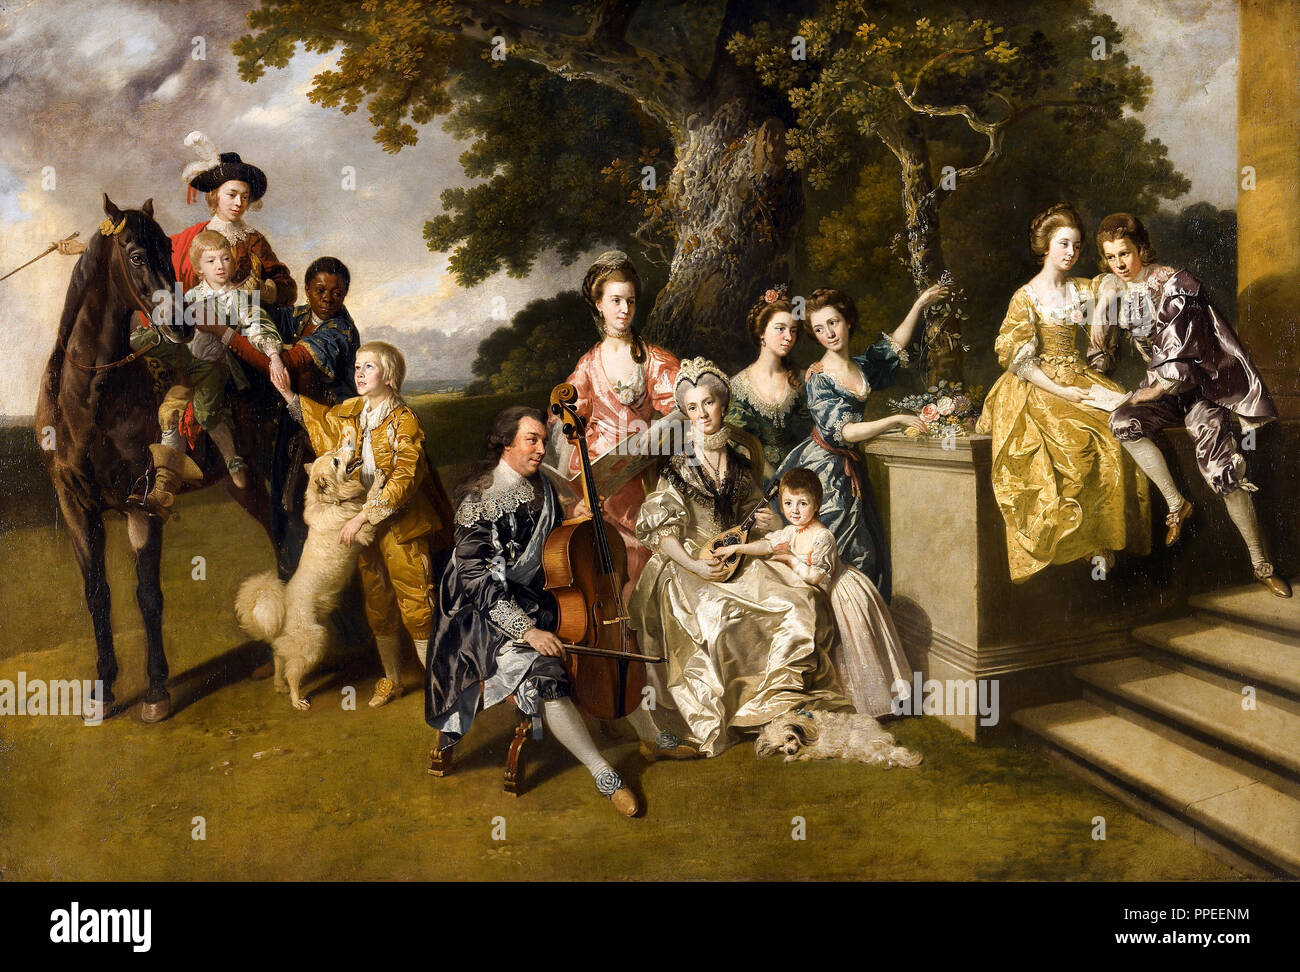 Johann Zoffany - die Familie von Sir William Young. Circa 1767. Öl auf Leinwand. Walker Art Gallery, Liverpool, England. Stockfoto